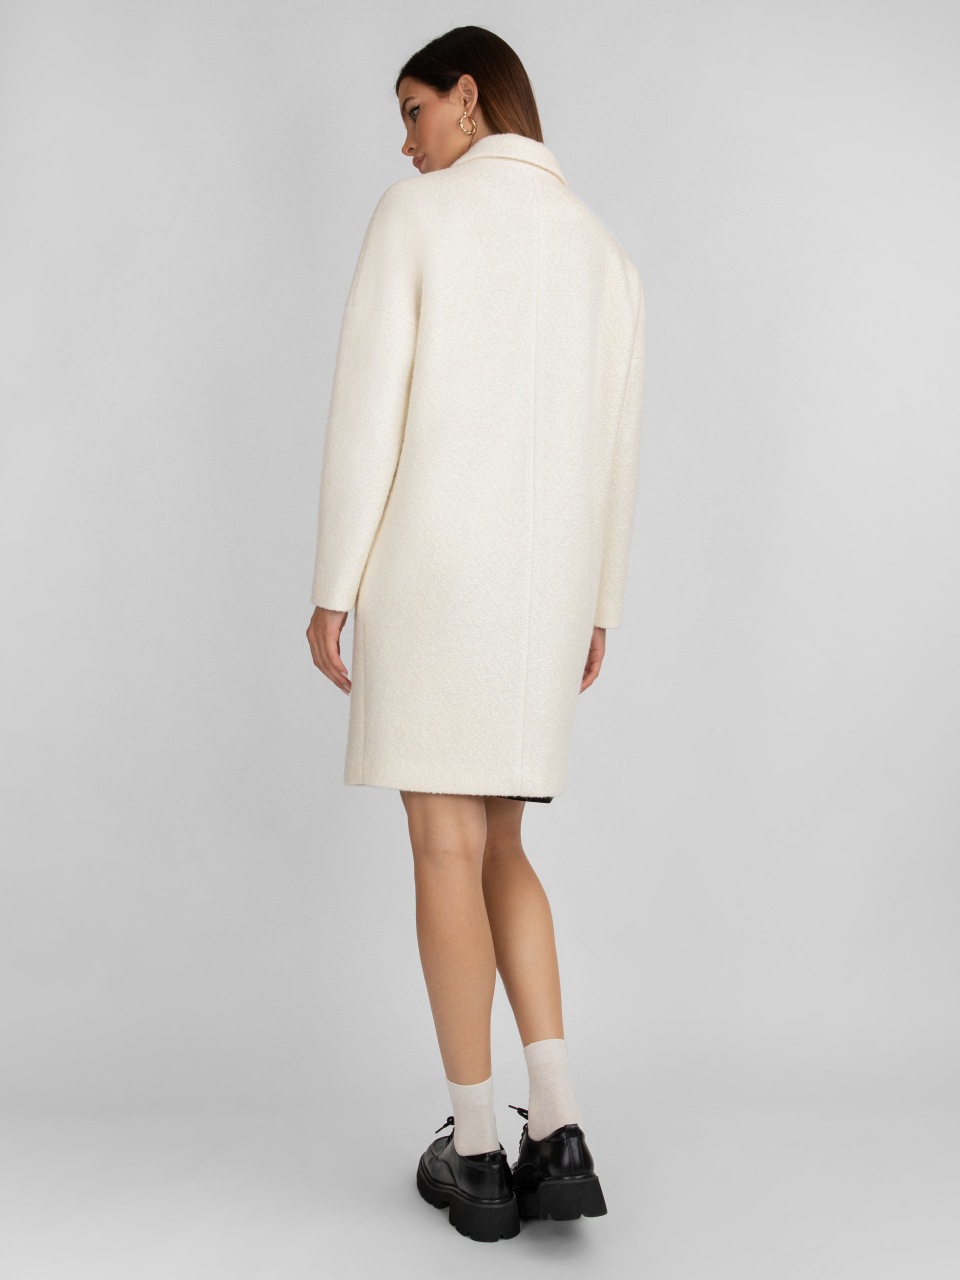 Пальто женское ElectraStyle 4-8023-225 белое 50 RU